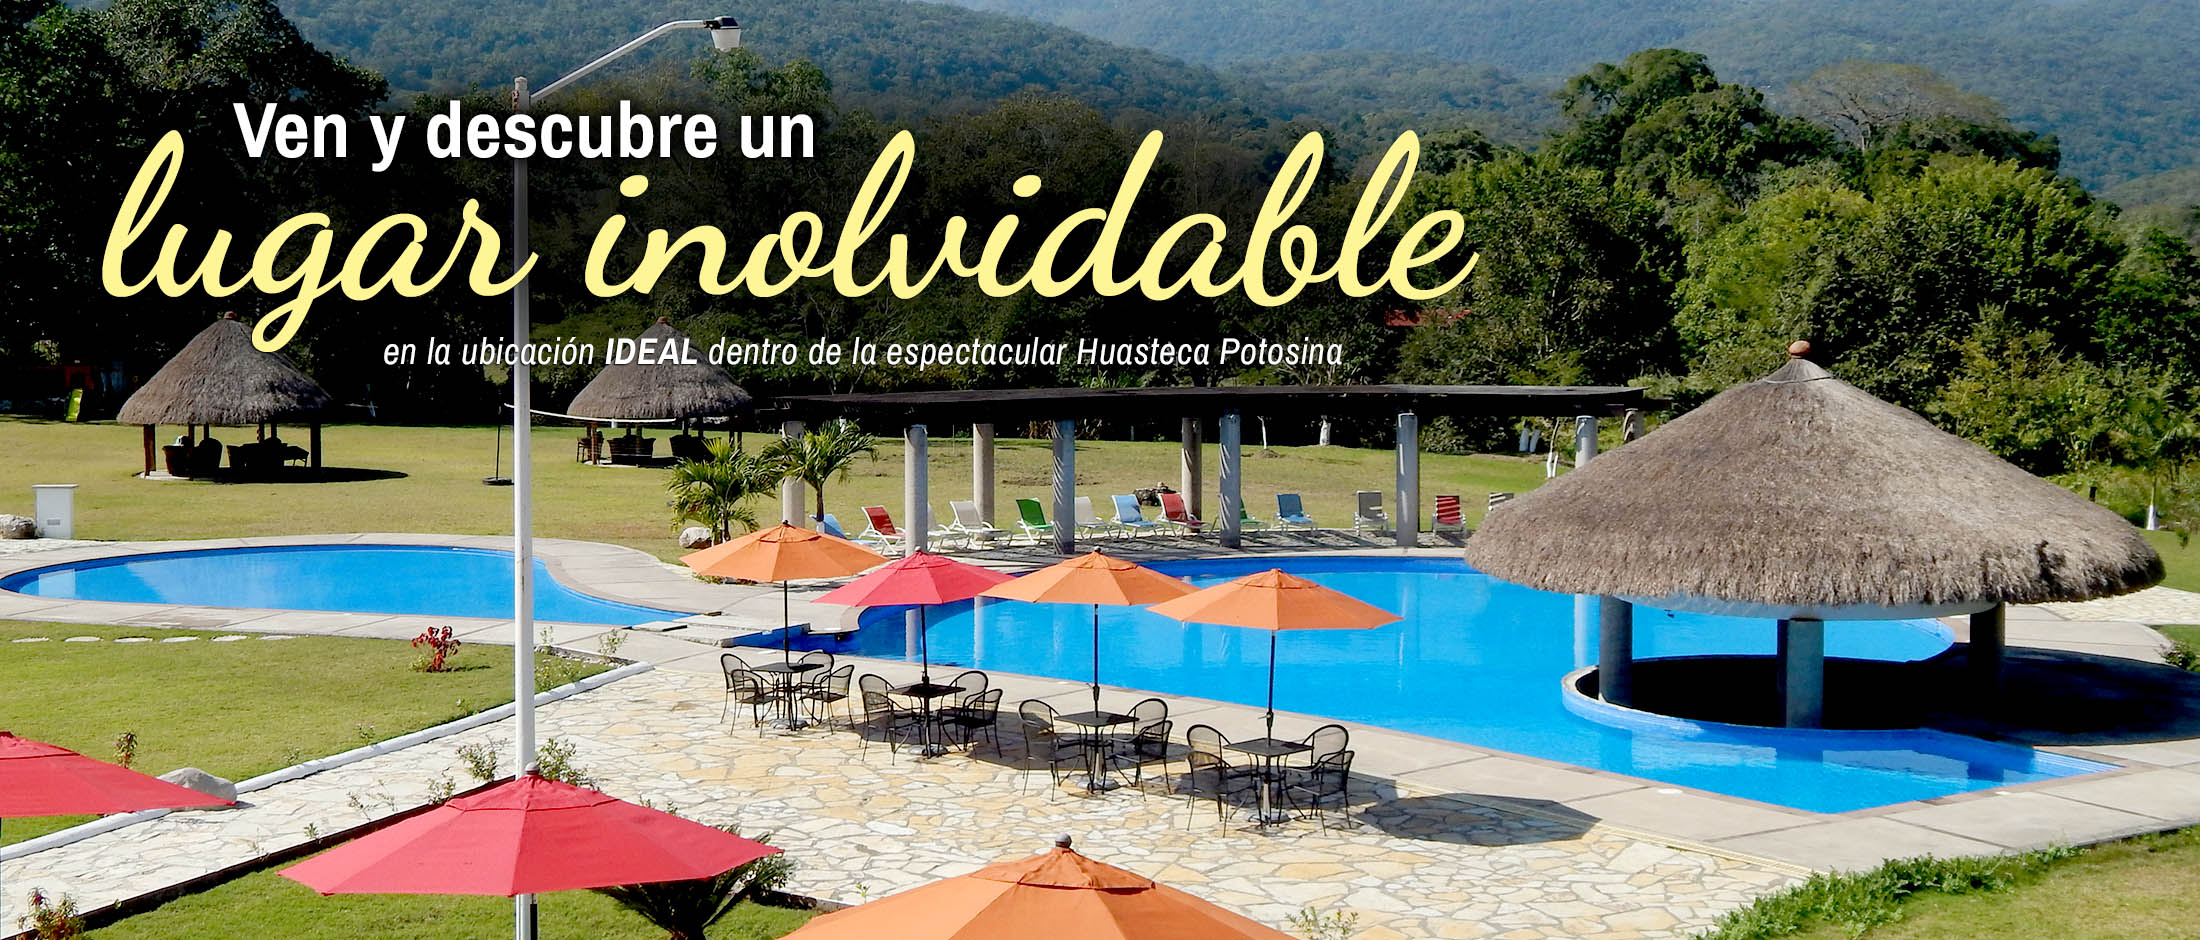 Hotel Real Tamasopo - Ven y descubre un lugar inolvidable en la ubicación ideal dentro de la espectacular Huasteca Potosina